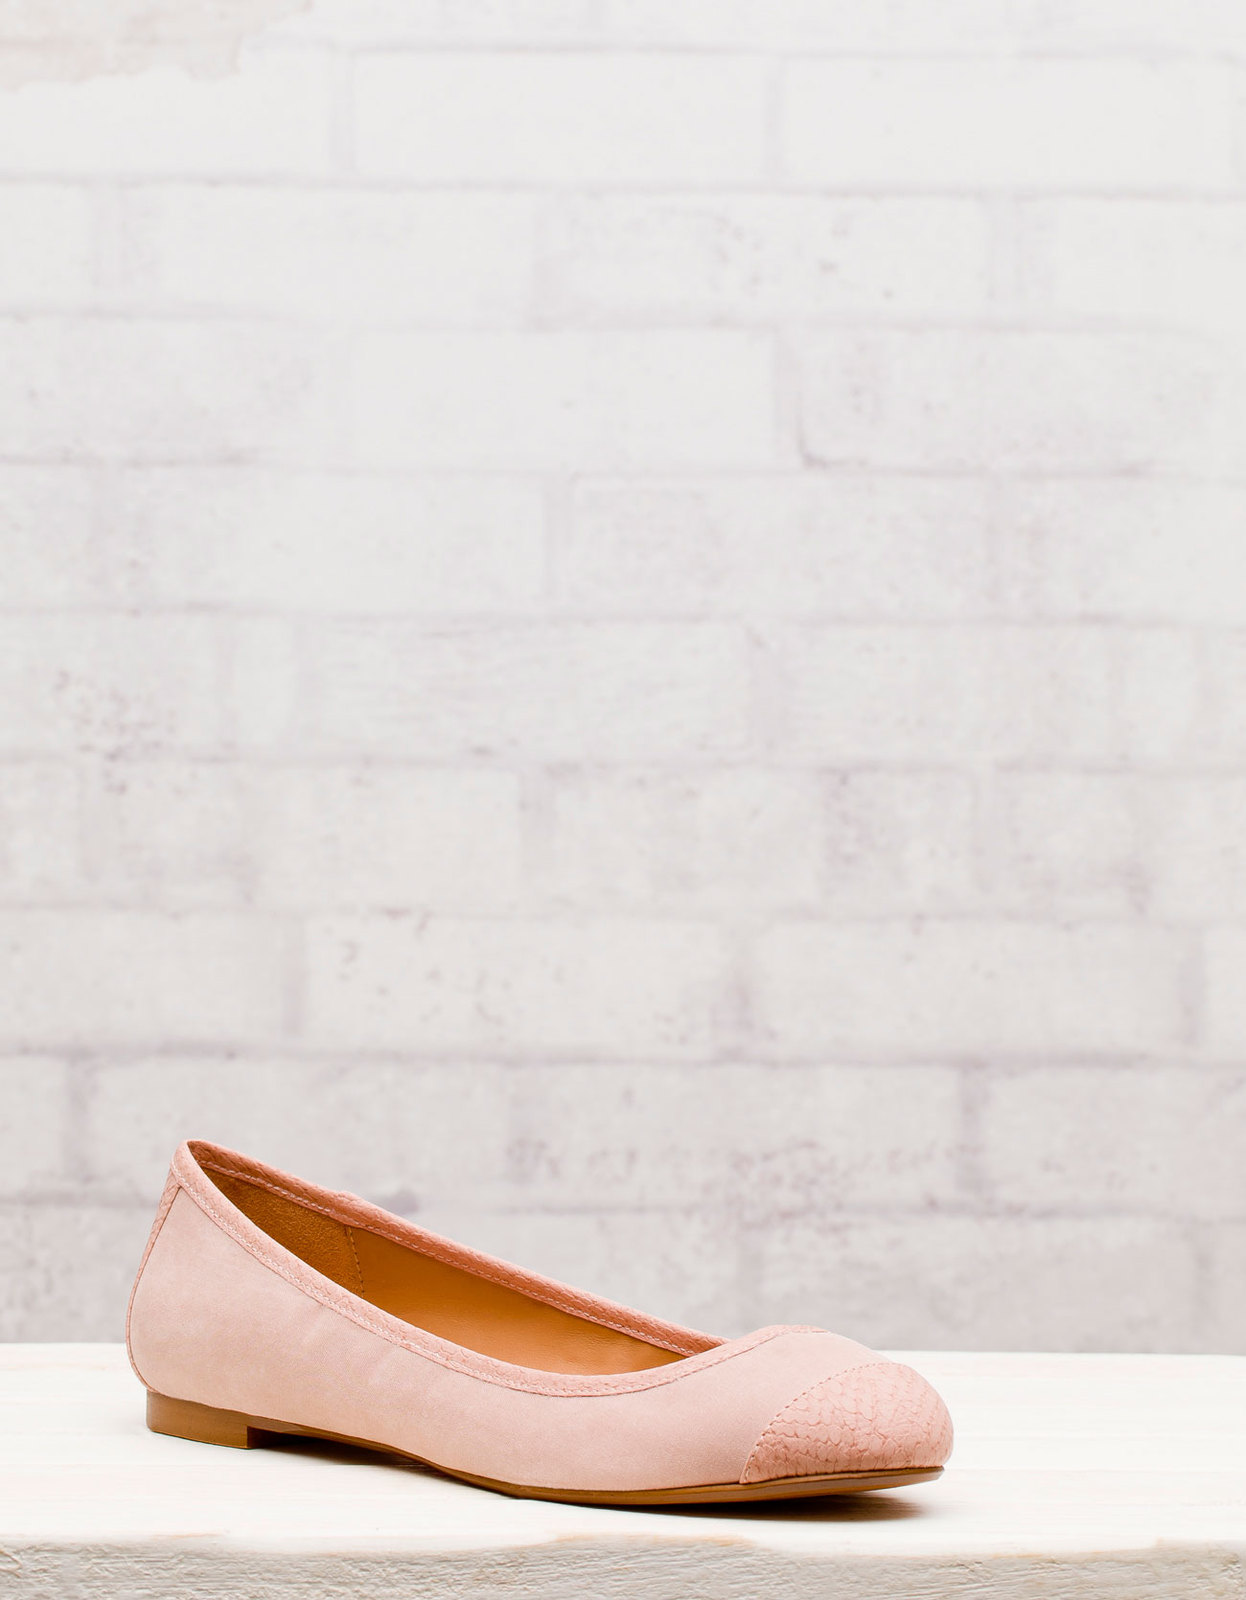 Stradivarius halvány rózsaszín balerina cipő 2012 fotója